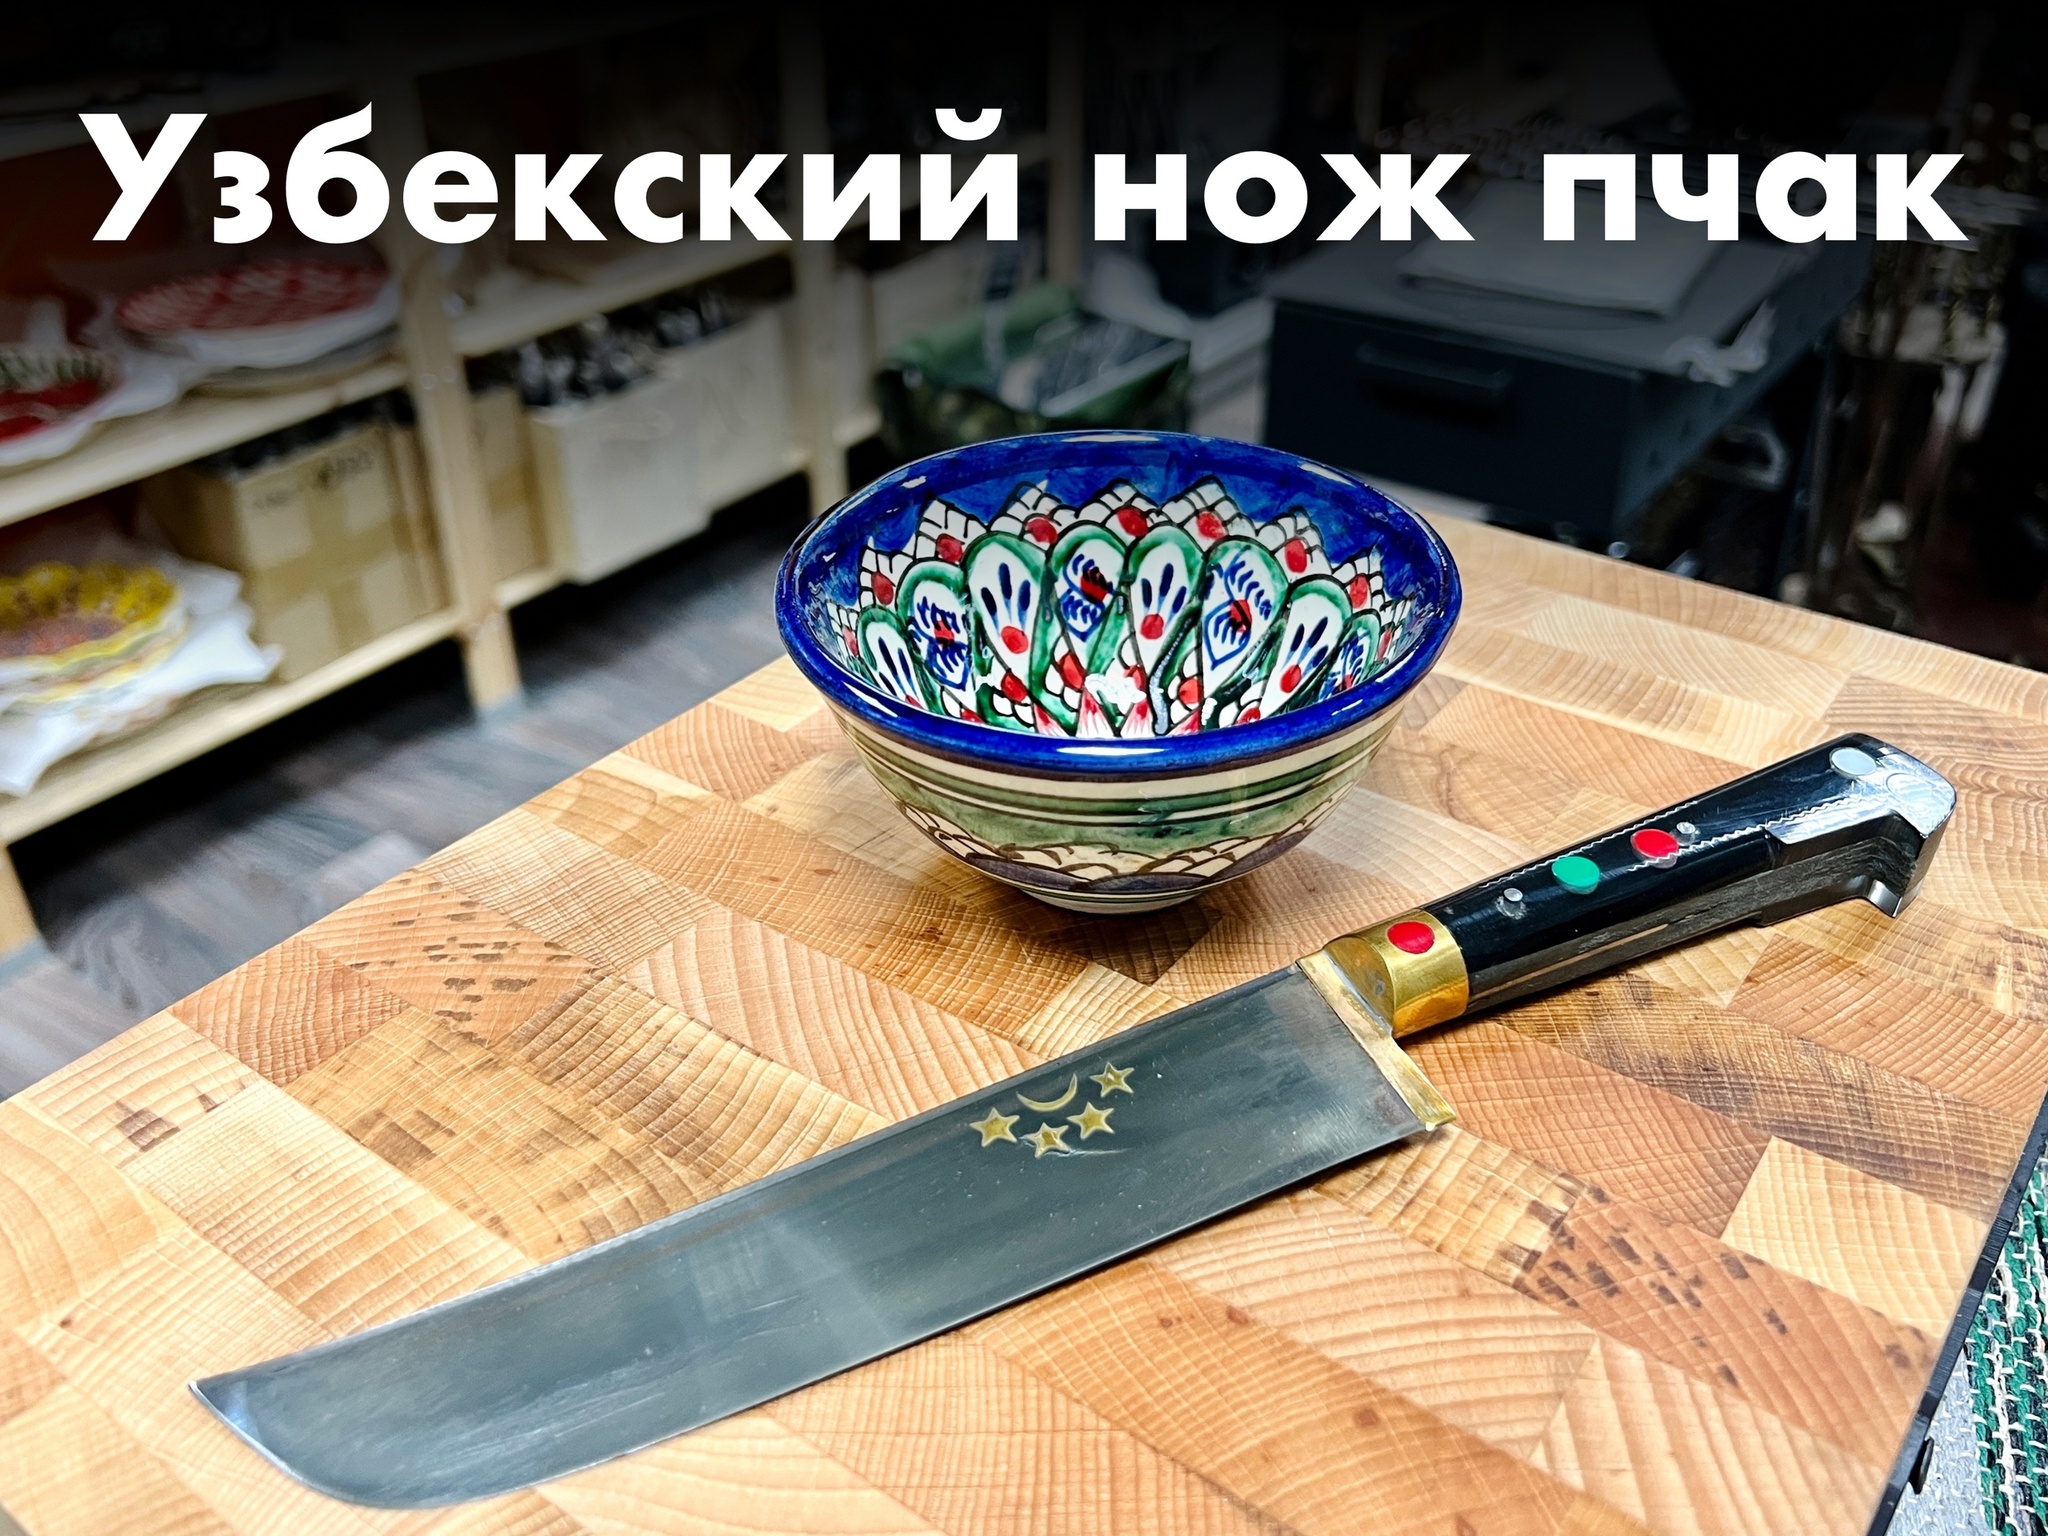 Как правильно точить узбекский нож пчак - особенности и заточки